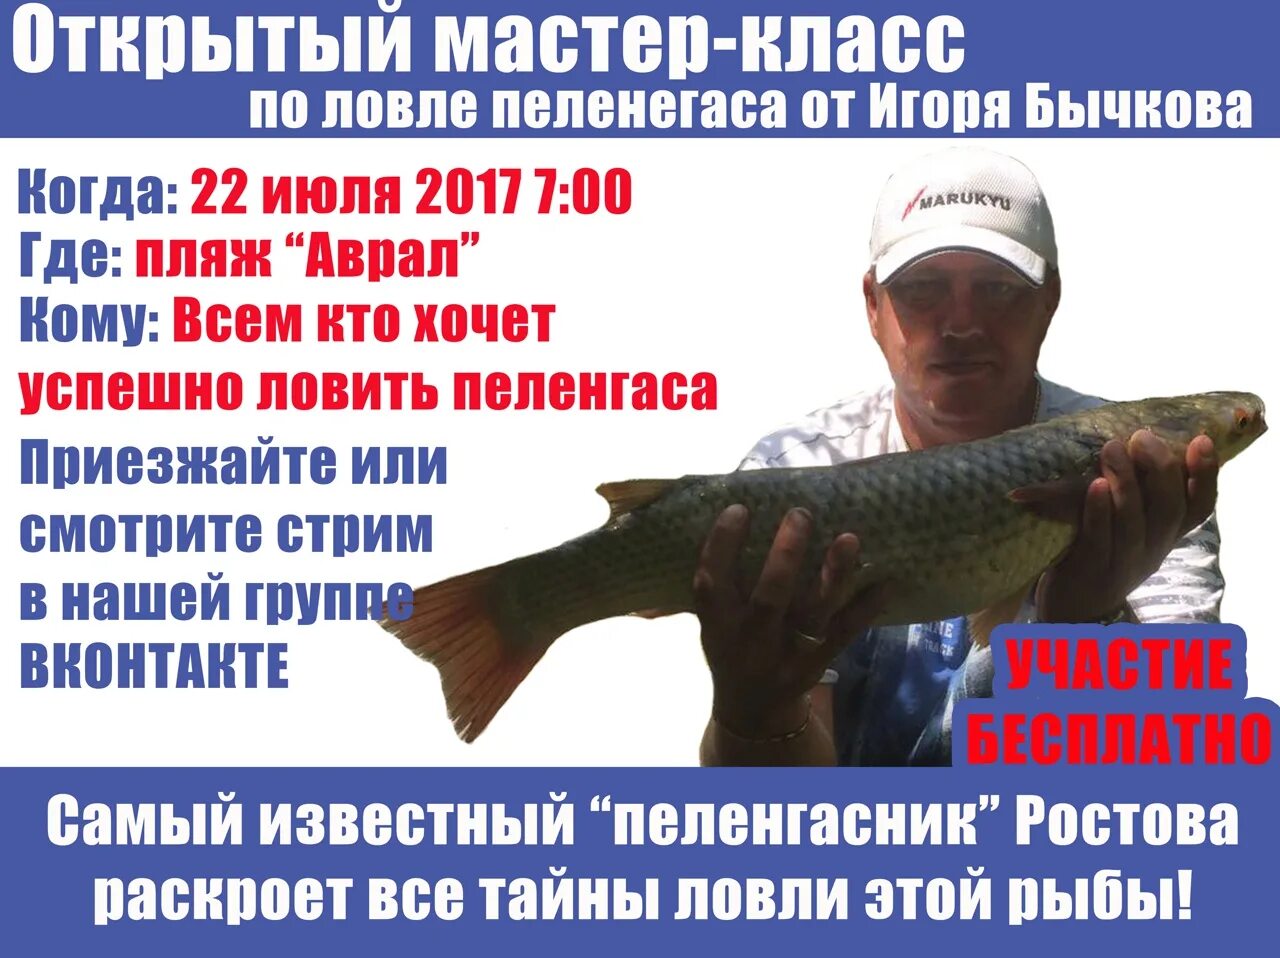 Правила любительского рыболовства в ростовской области